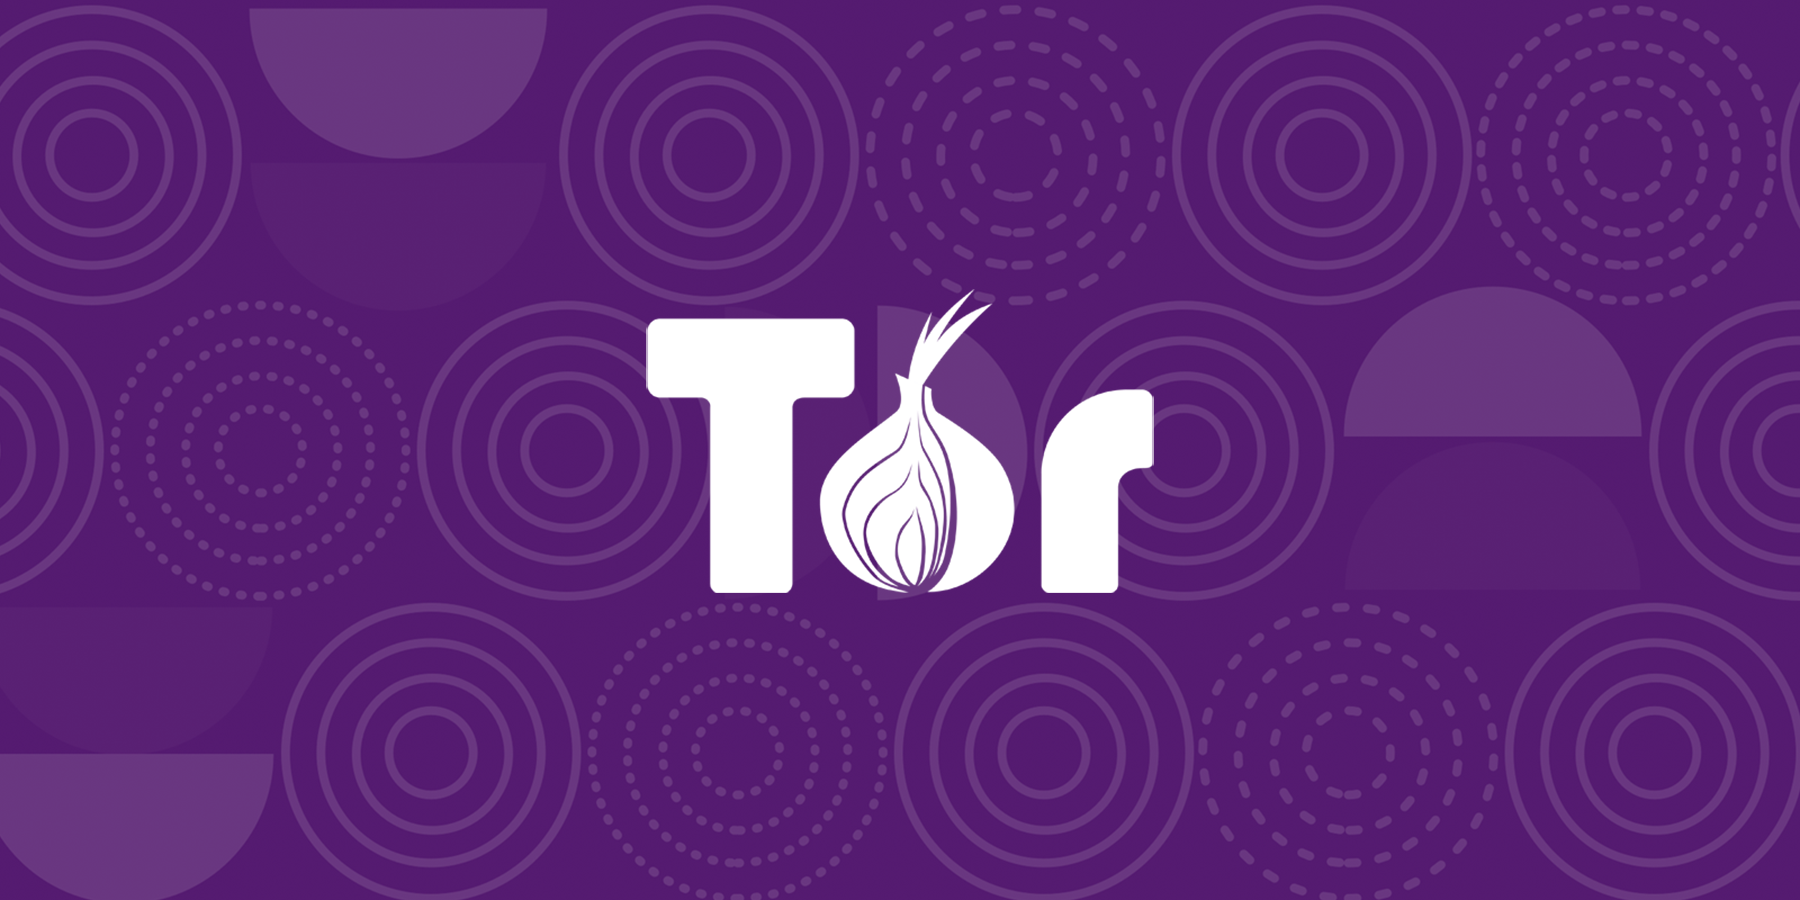 image du logo Tor en oignon sur fond violet qui lance une nouvelle version Android mobile